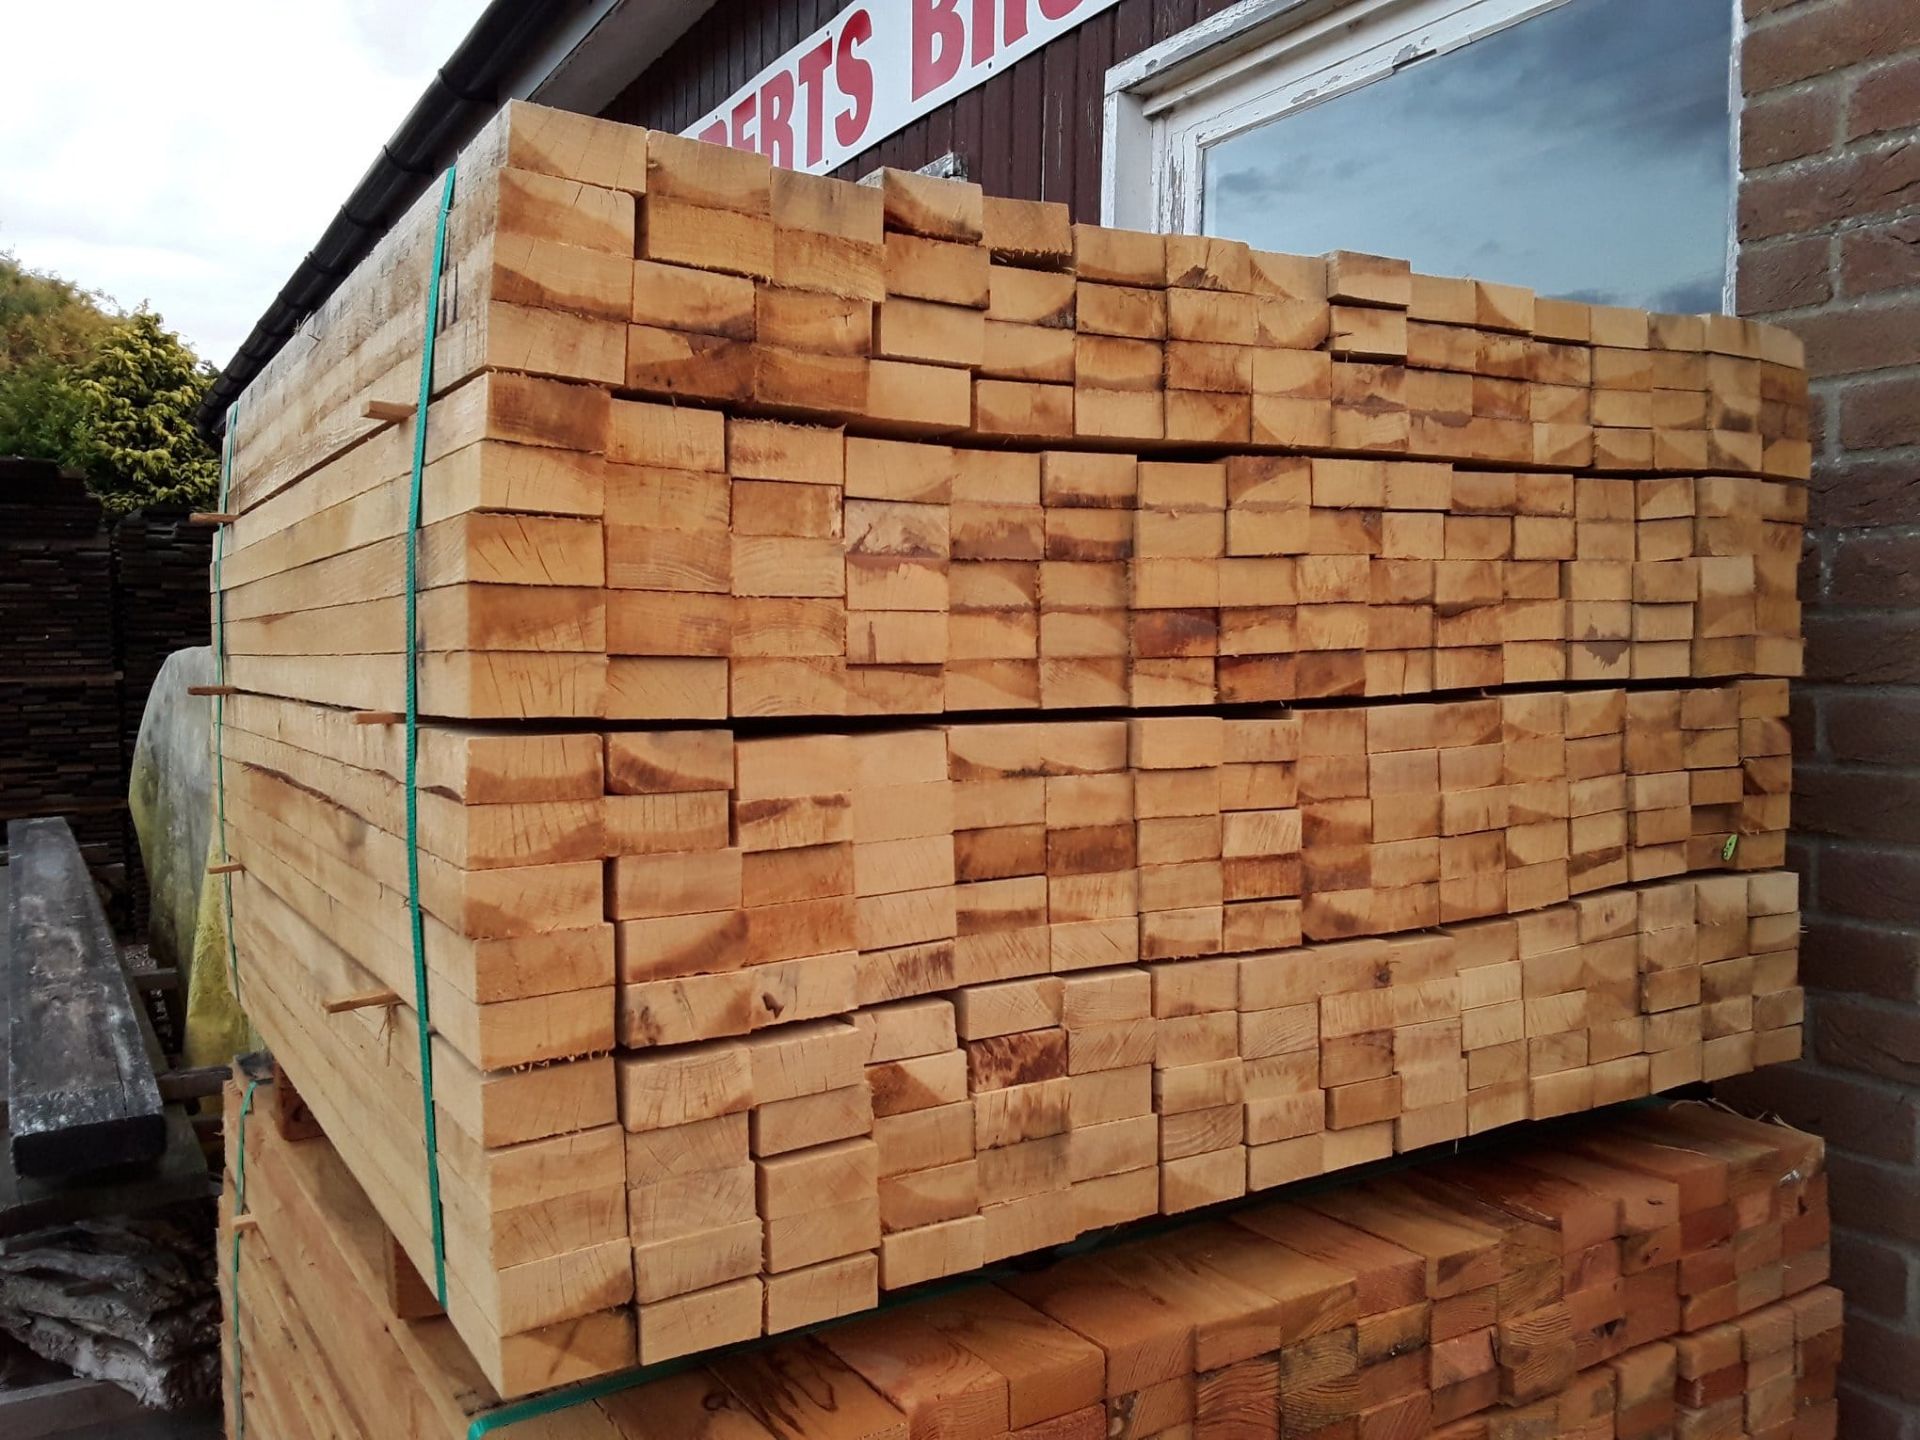 100x hardwood sawn unseasoned english oak palings / timber offcuts - Image 2 of 3